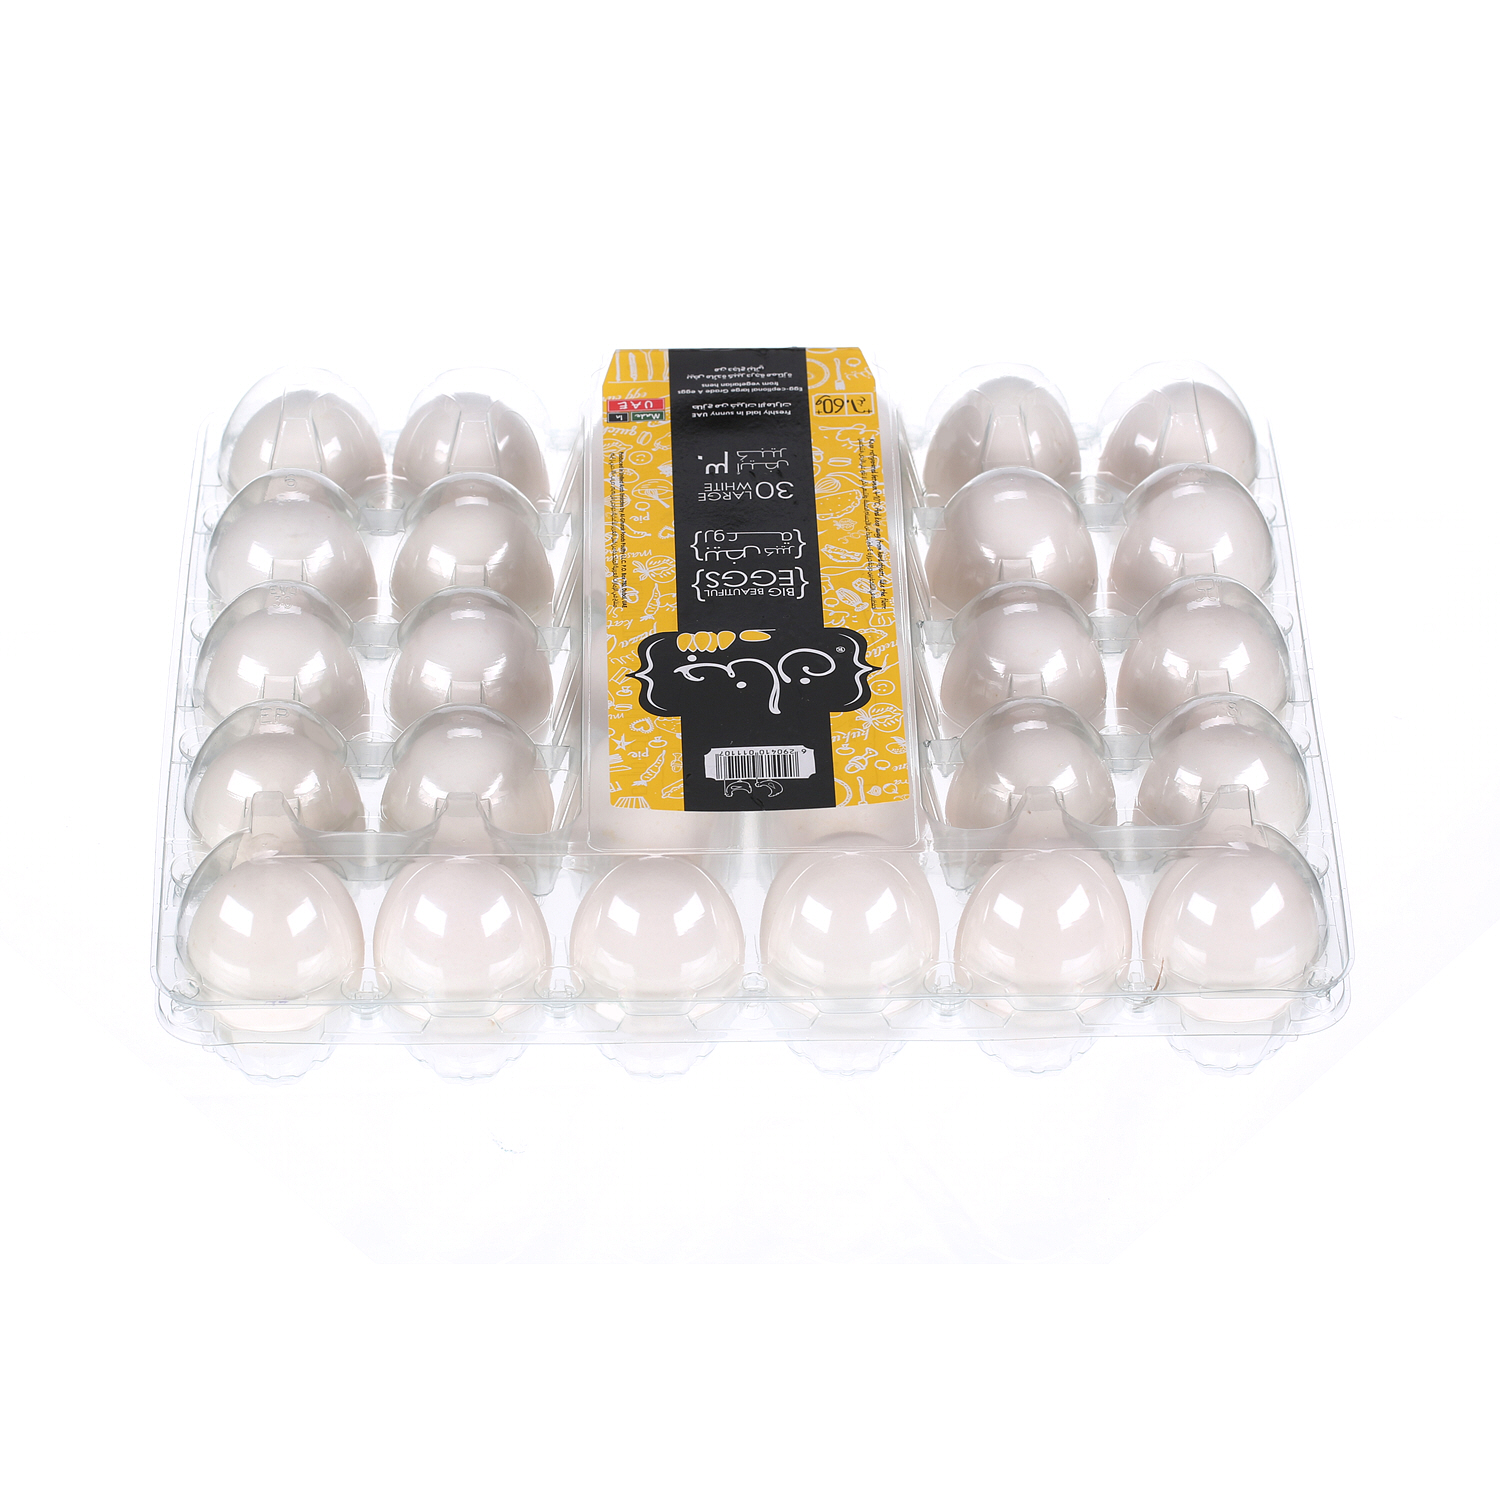 Jenan White Eggs Large 30 Pack